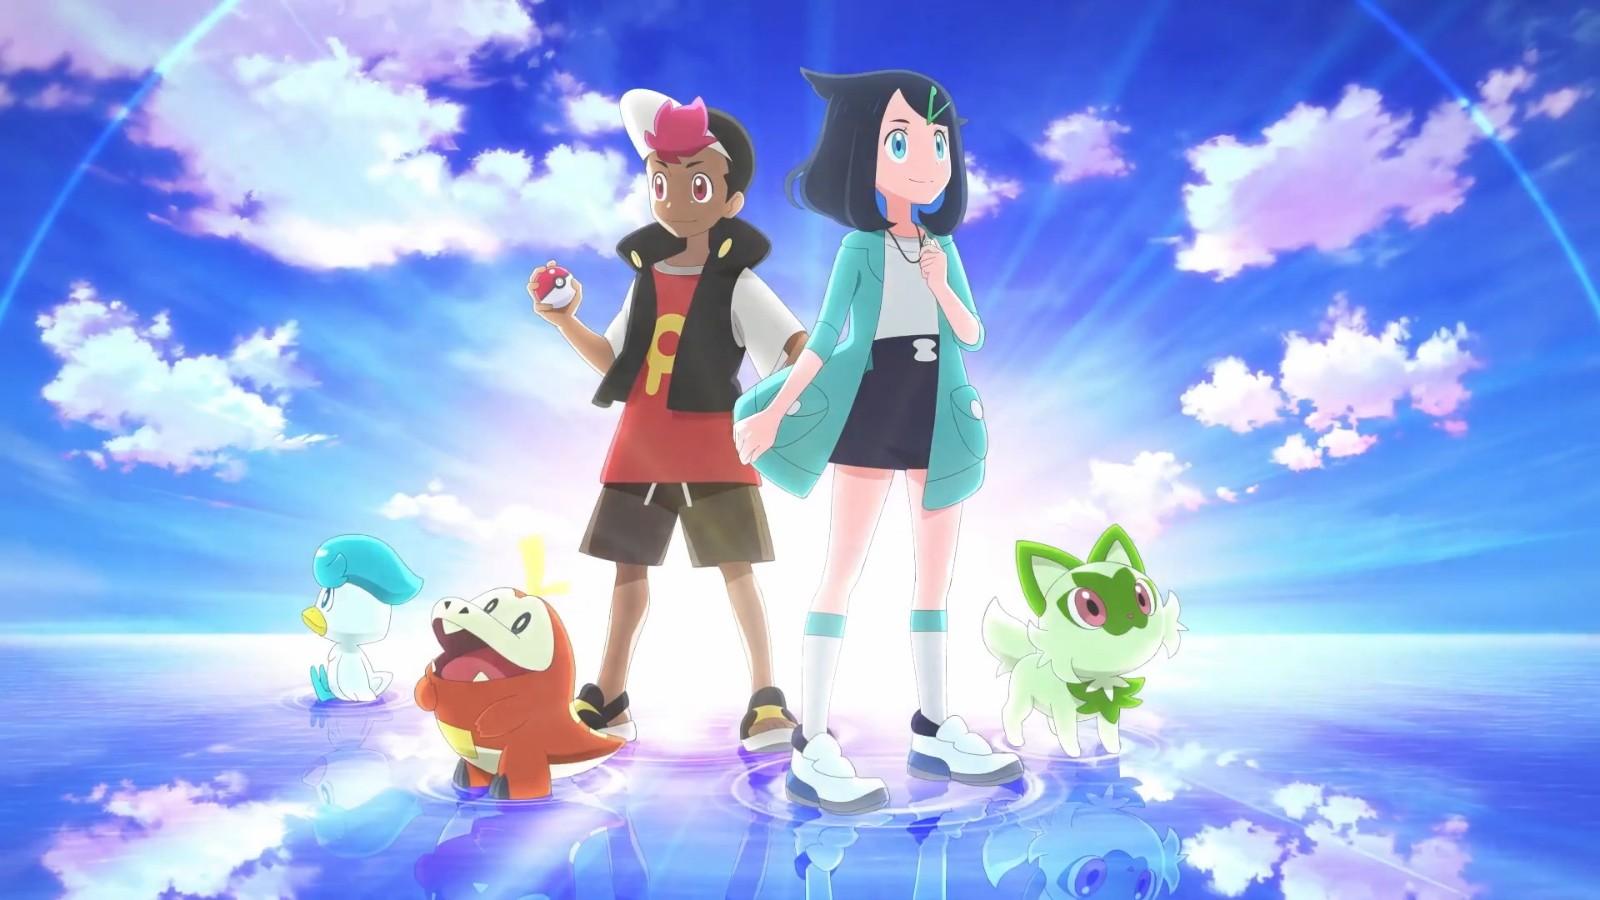 pokémon horizons netflix: Pokémon Horizons Netflix Premiere